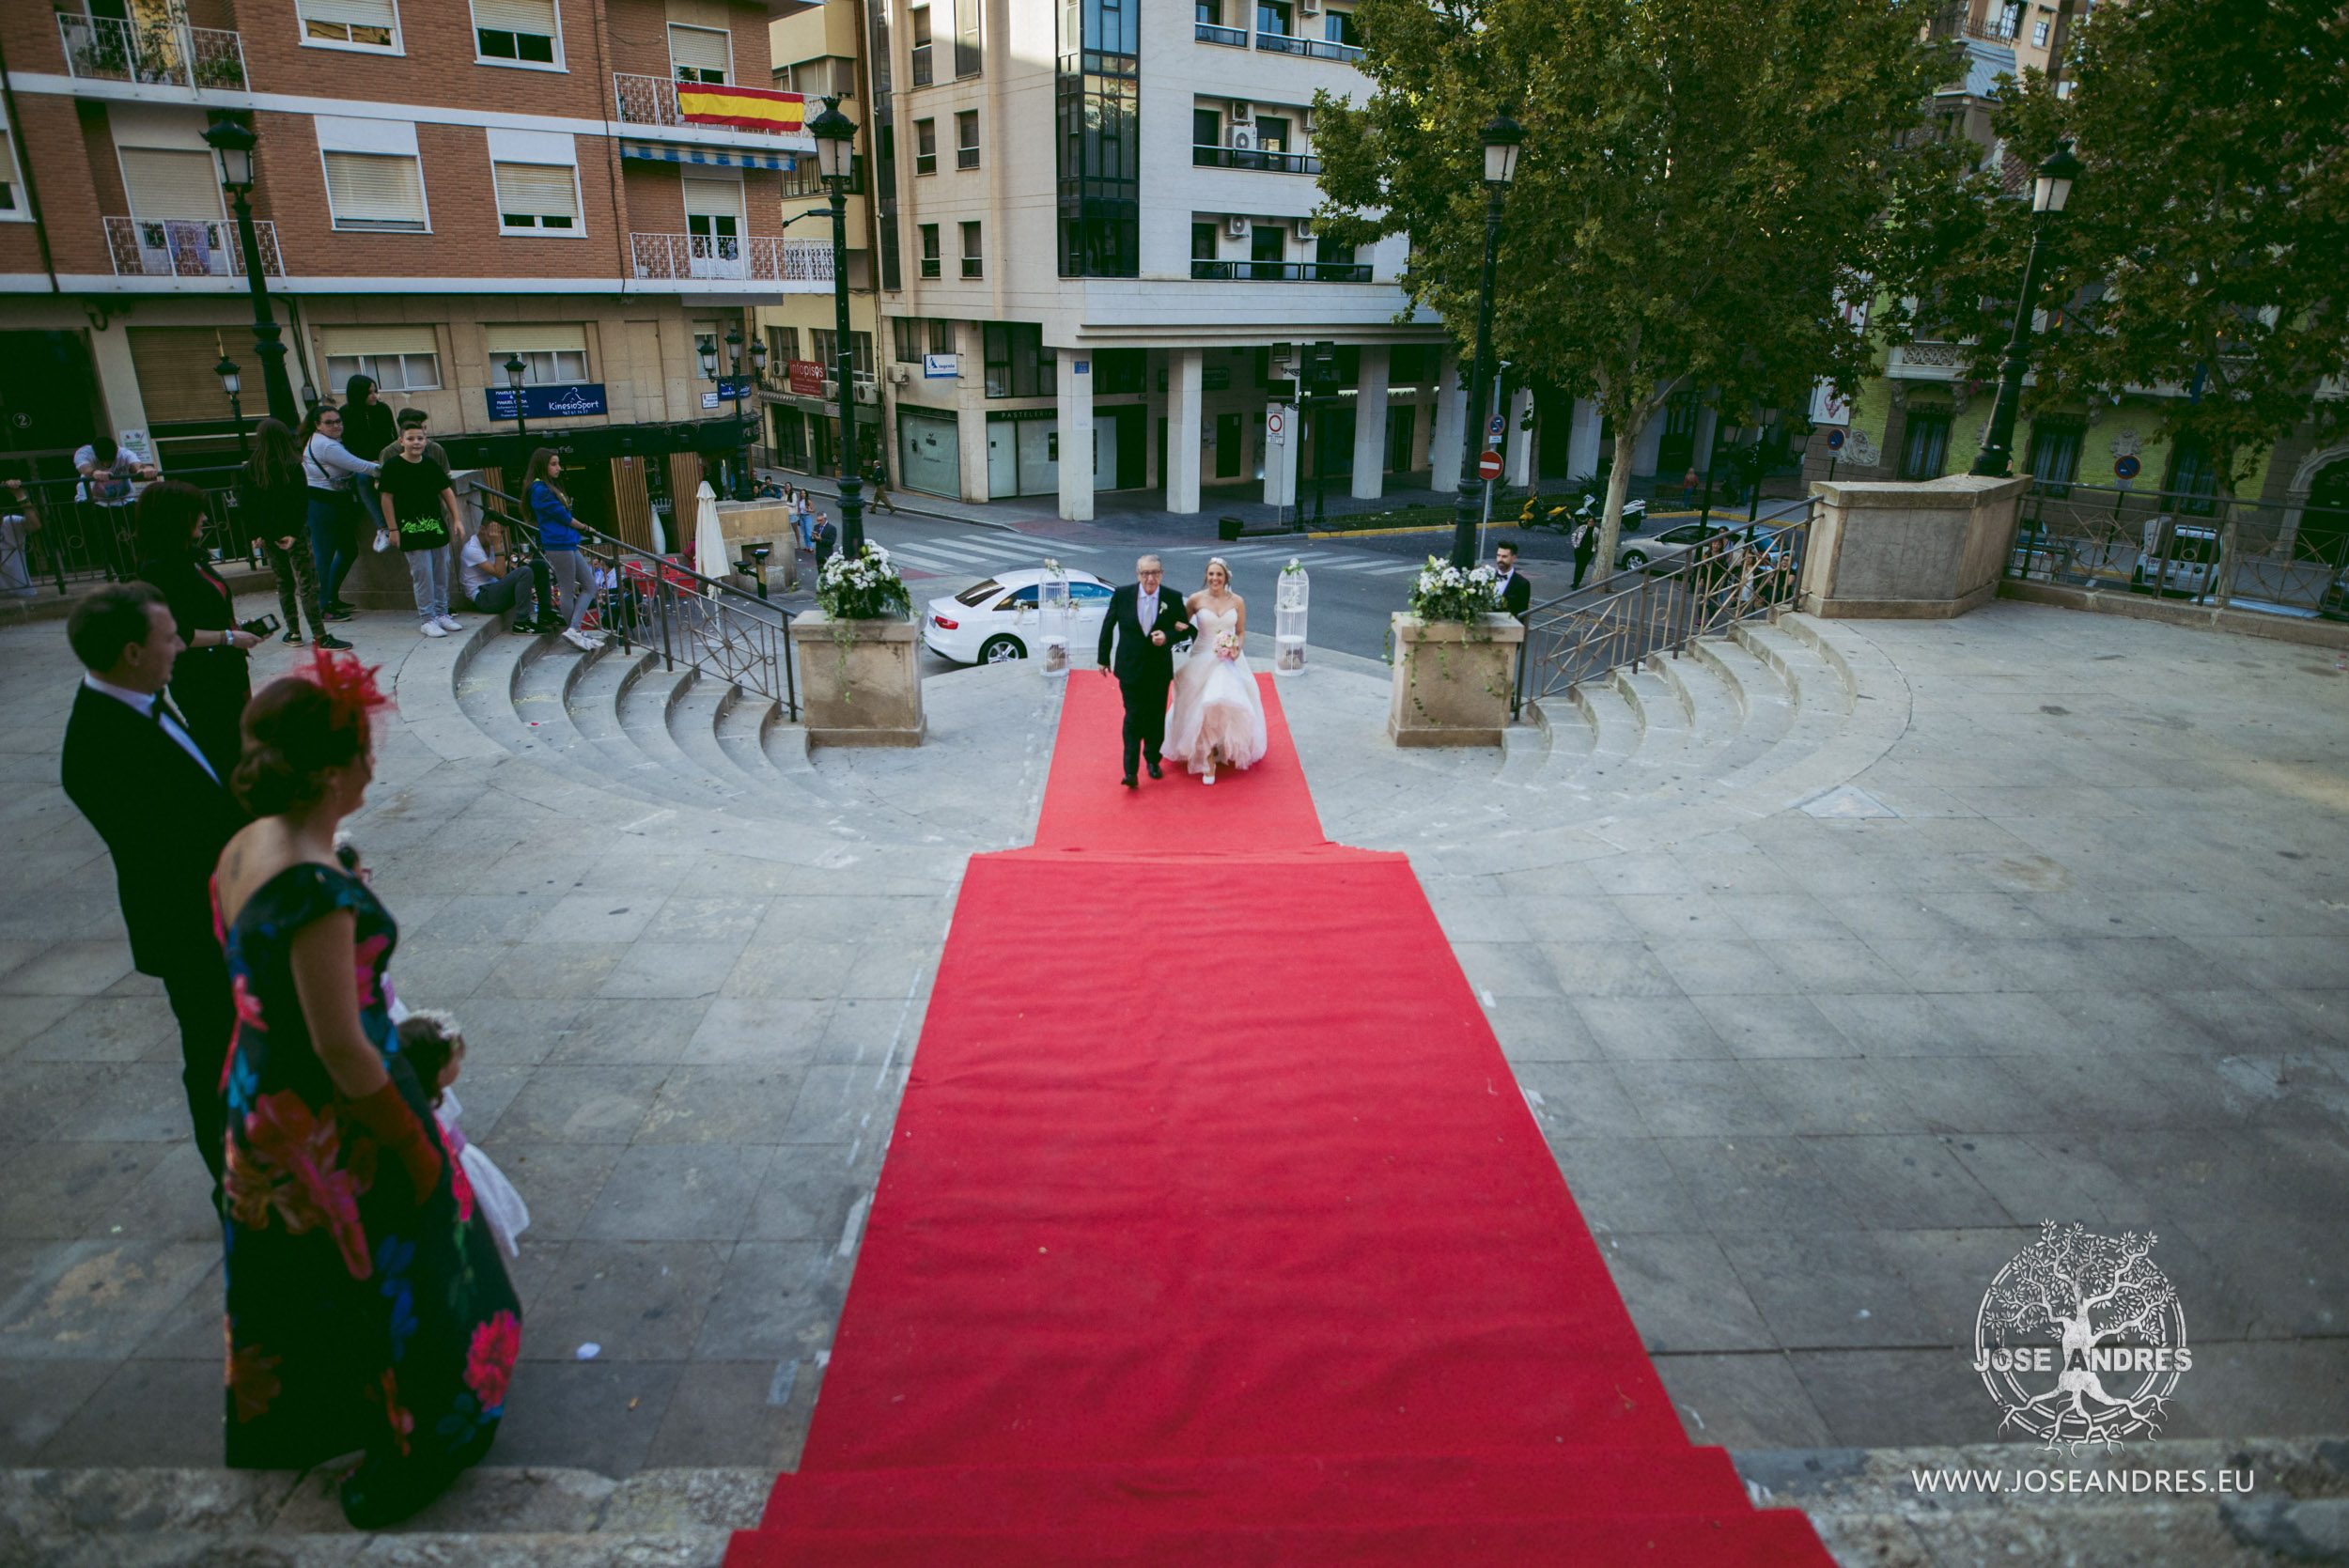 Boda en el hotel Beatriz de Albacete, Jose Andrés fotografía y cine documental de boda en Valencia, Albacete y Cuenca. Fotografía de boda natural y divertida, fotografía de boda sin posados